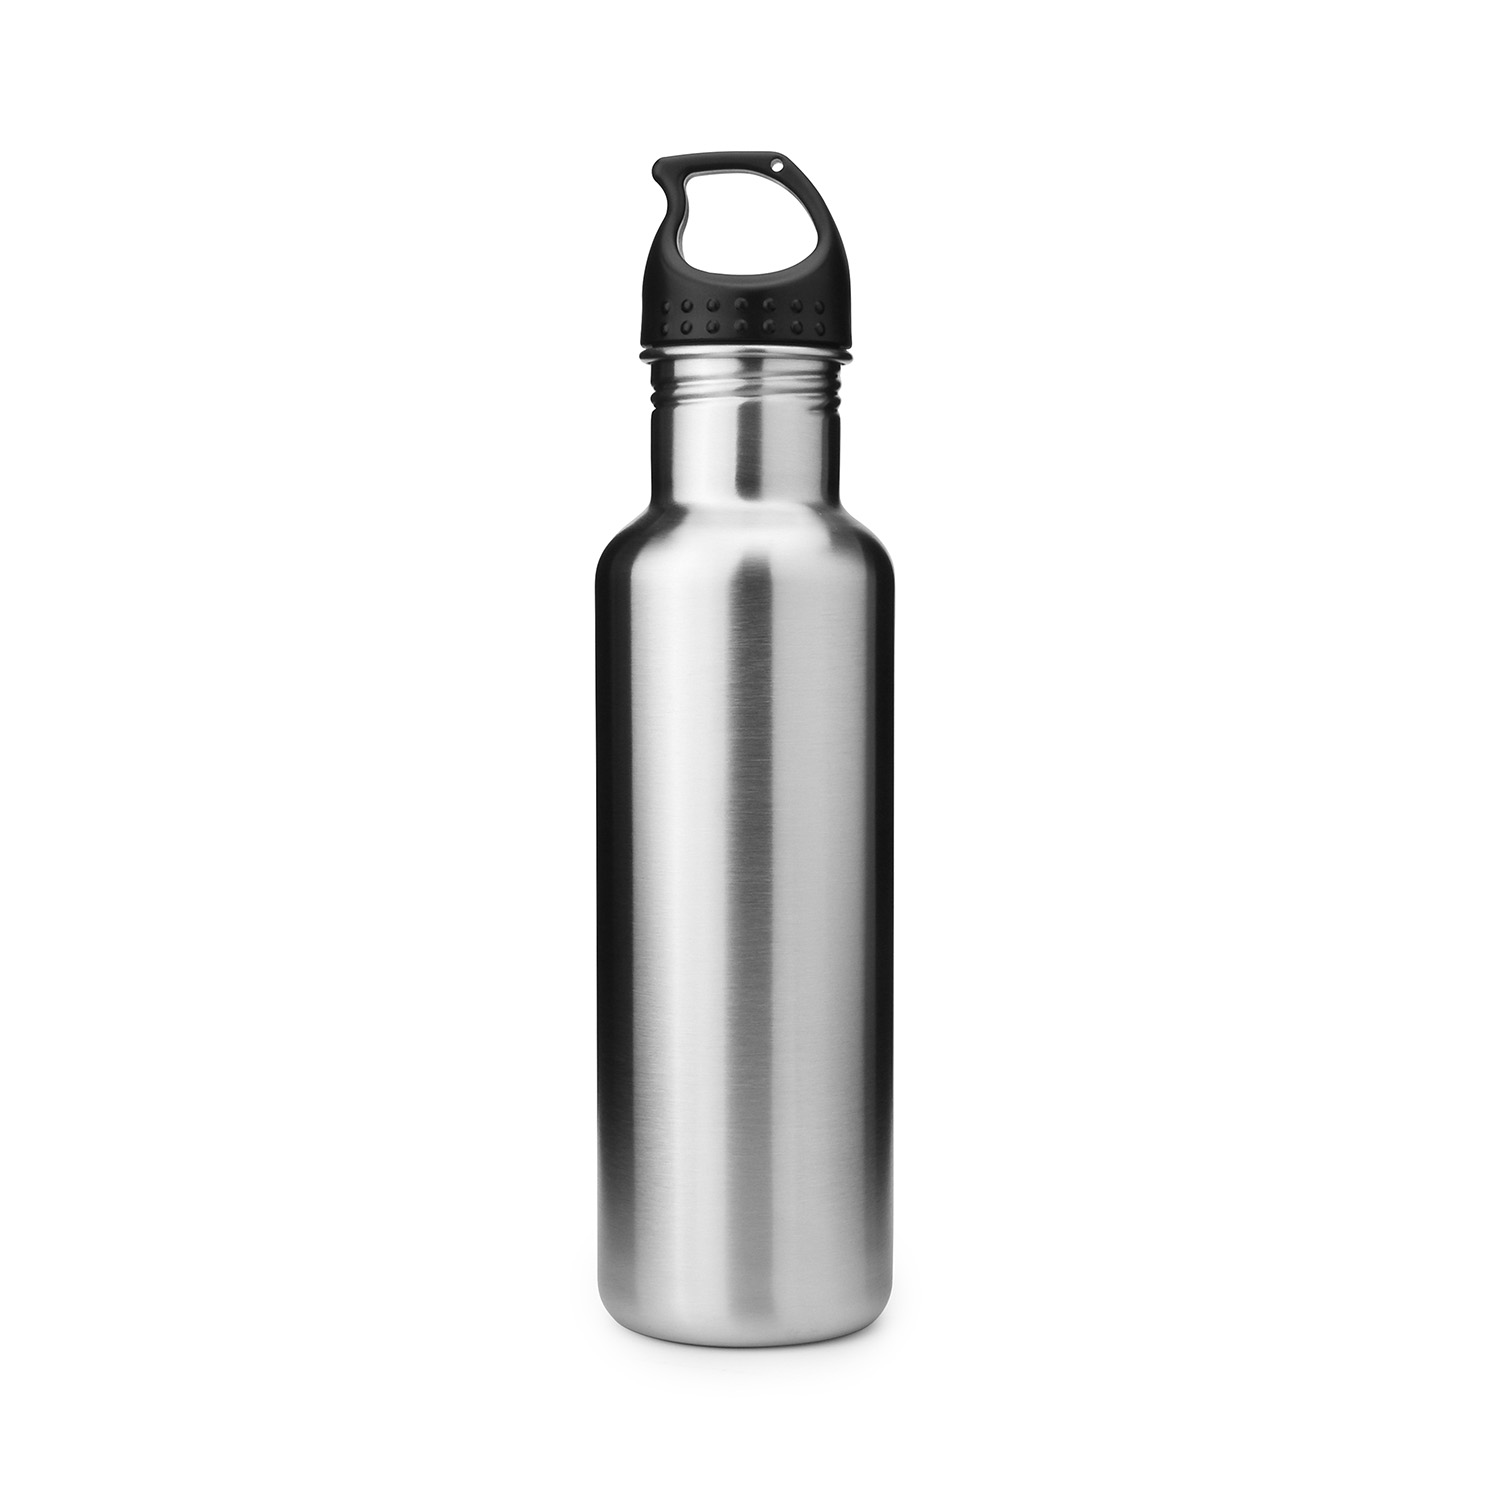 https://www.waterbottle.tech/wp-content/uploads/2020/02/stainless-steel-water-bottle-sport-outdoor-reusable-s1424f1.jpg